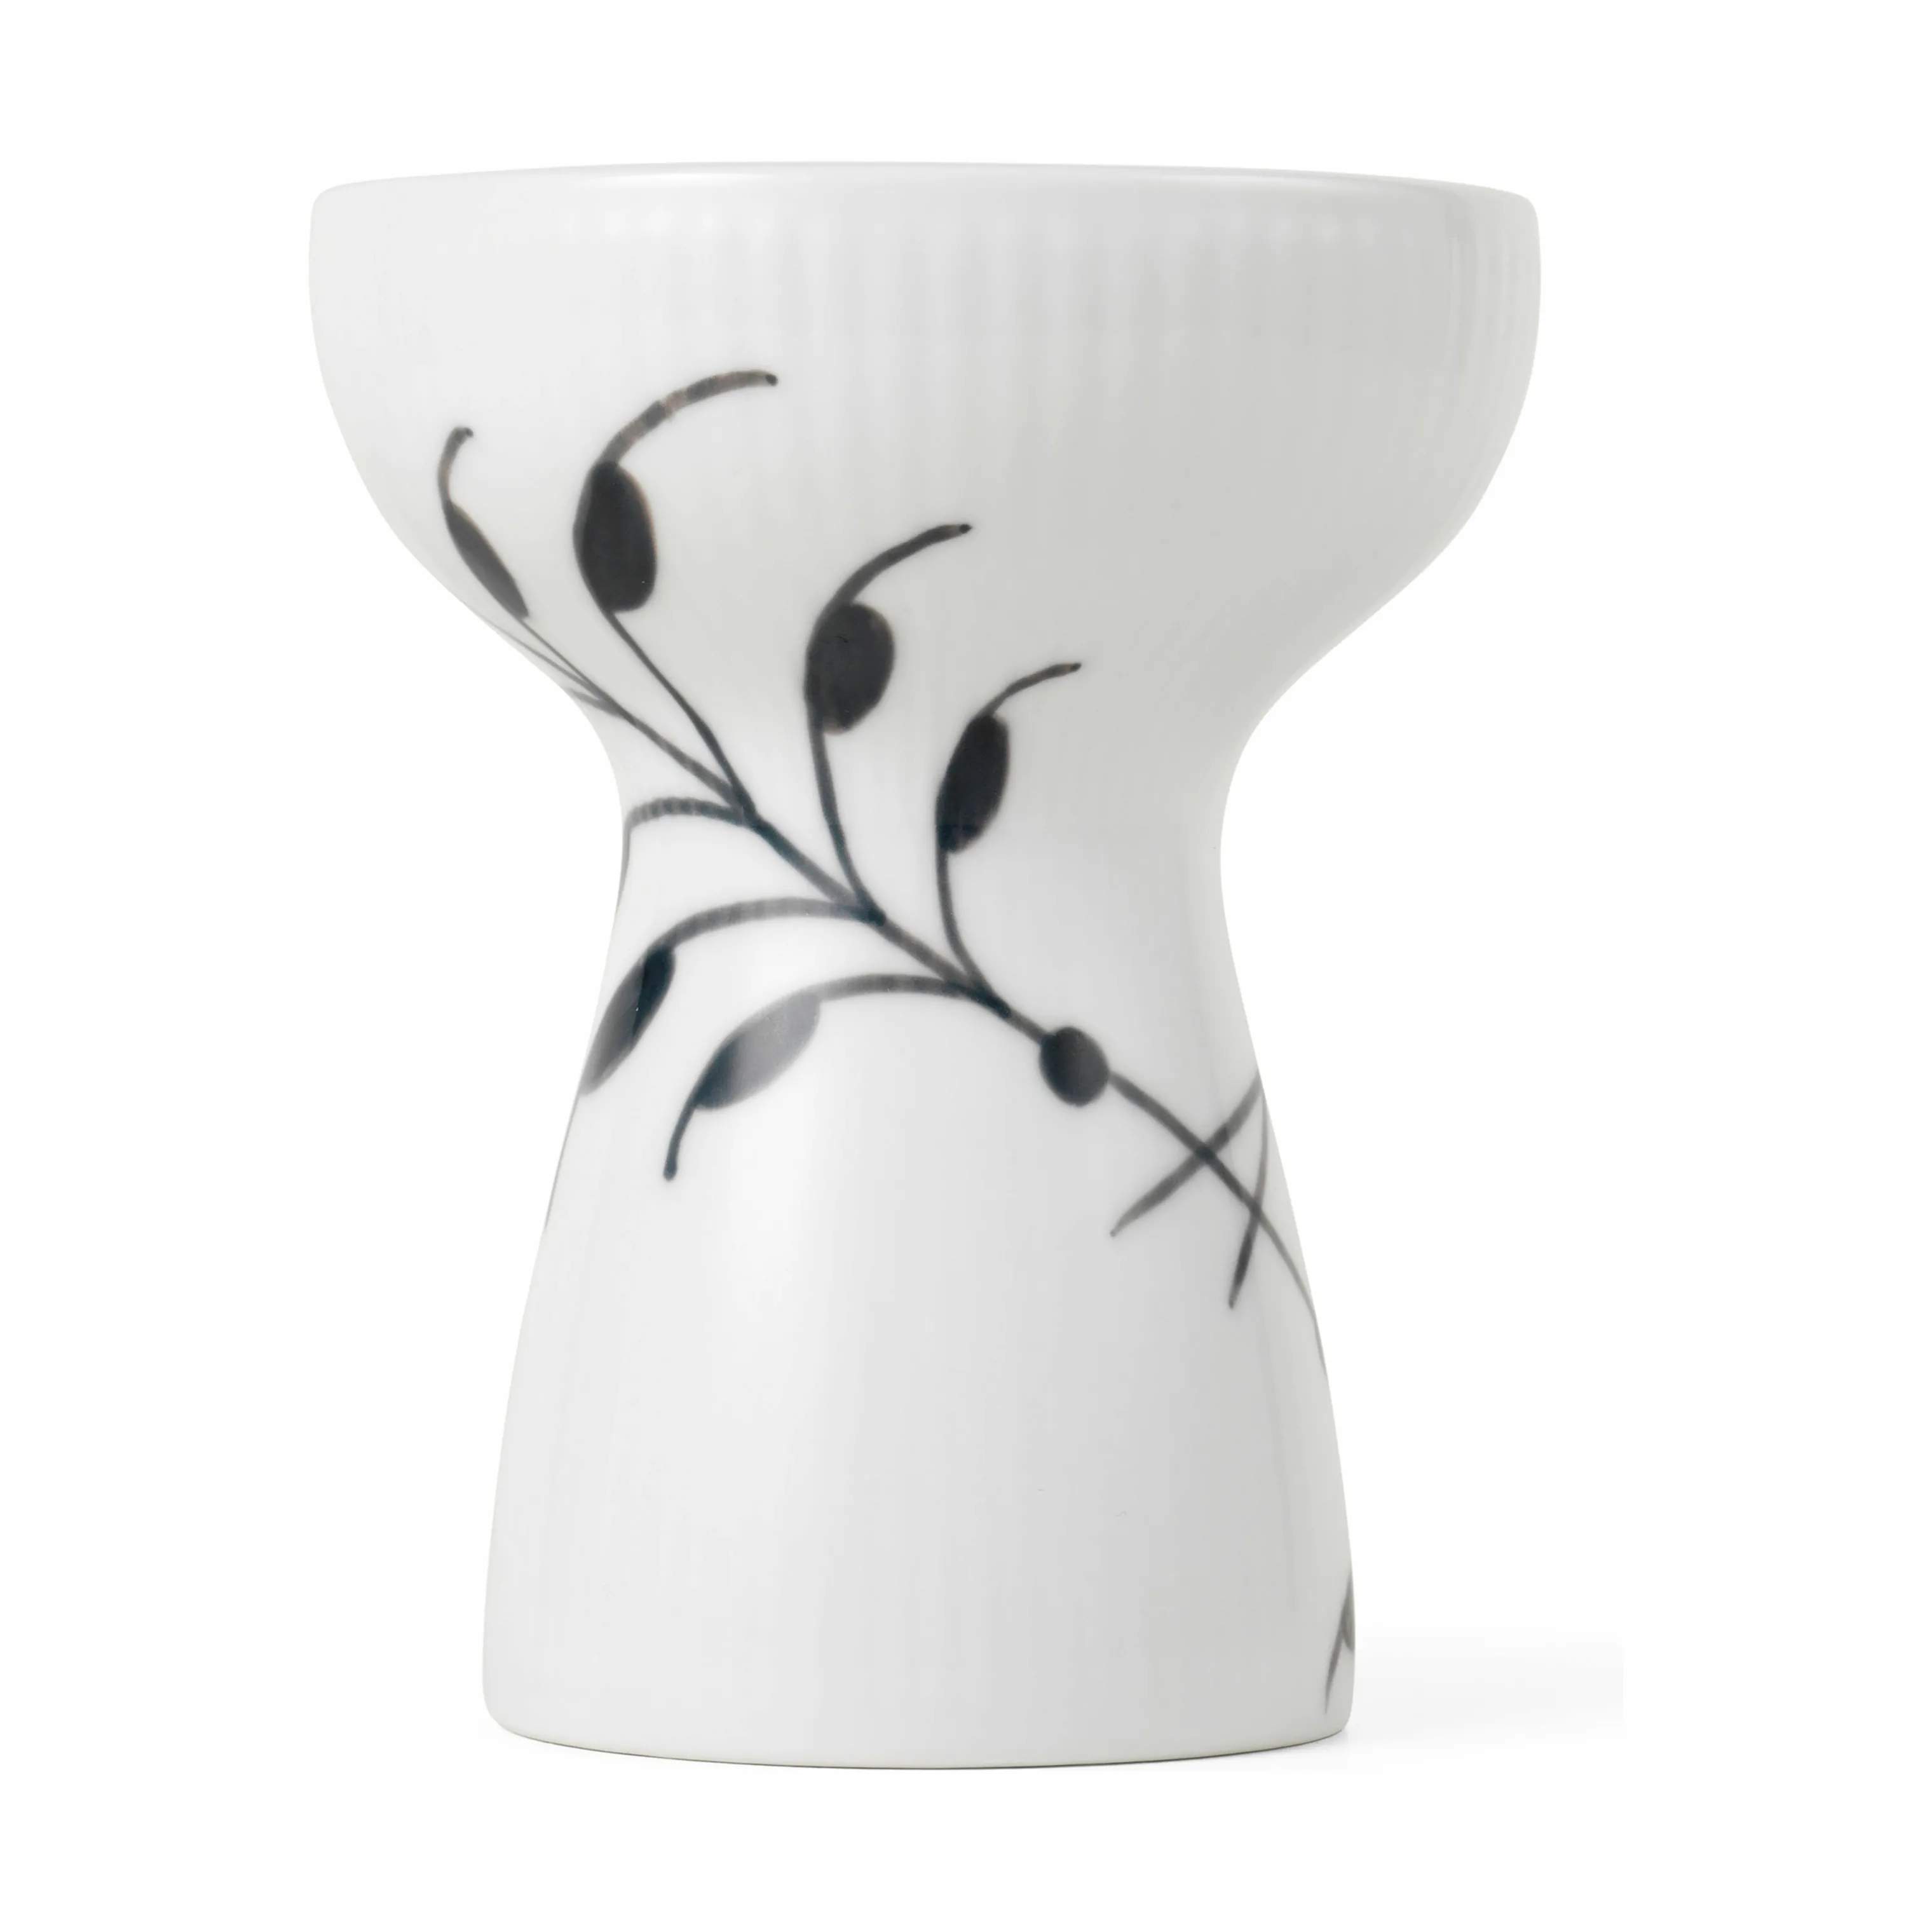 Sort Mega Riflet Vase, hvid/sort, large